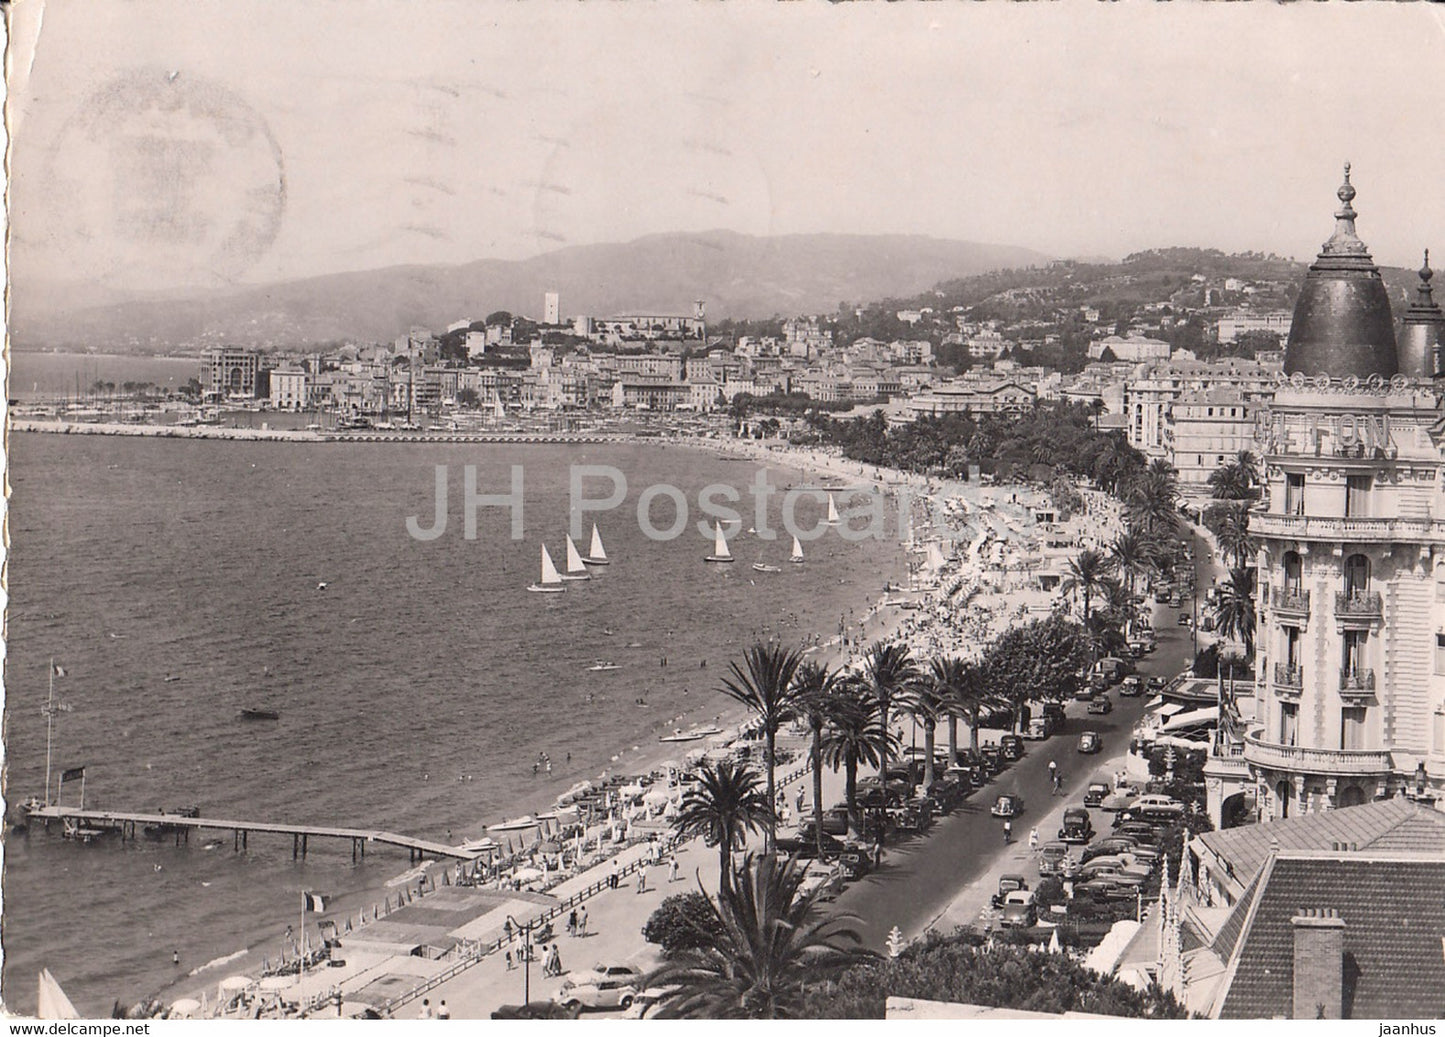 La Cote d'Azur - Cannes - Vue Generale - 317 - old postcard - 1953 - France - used - JH Postcards